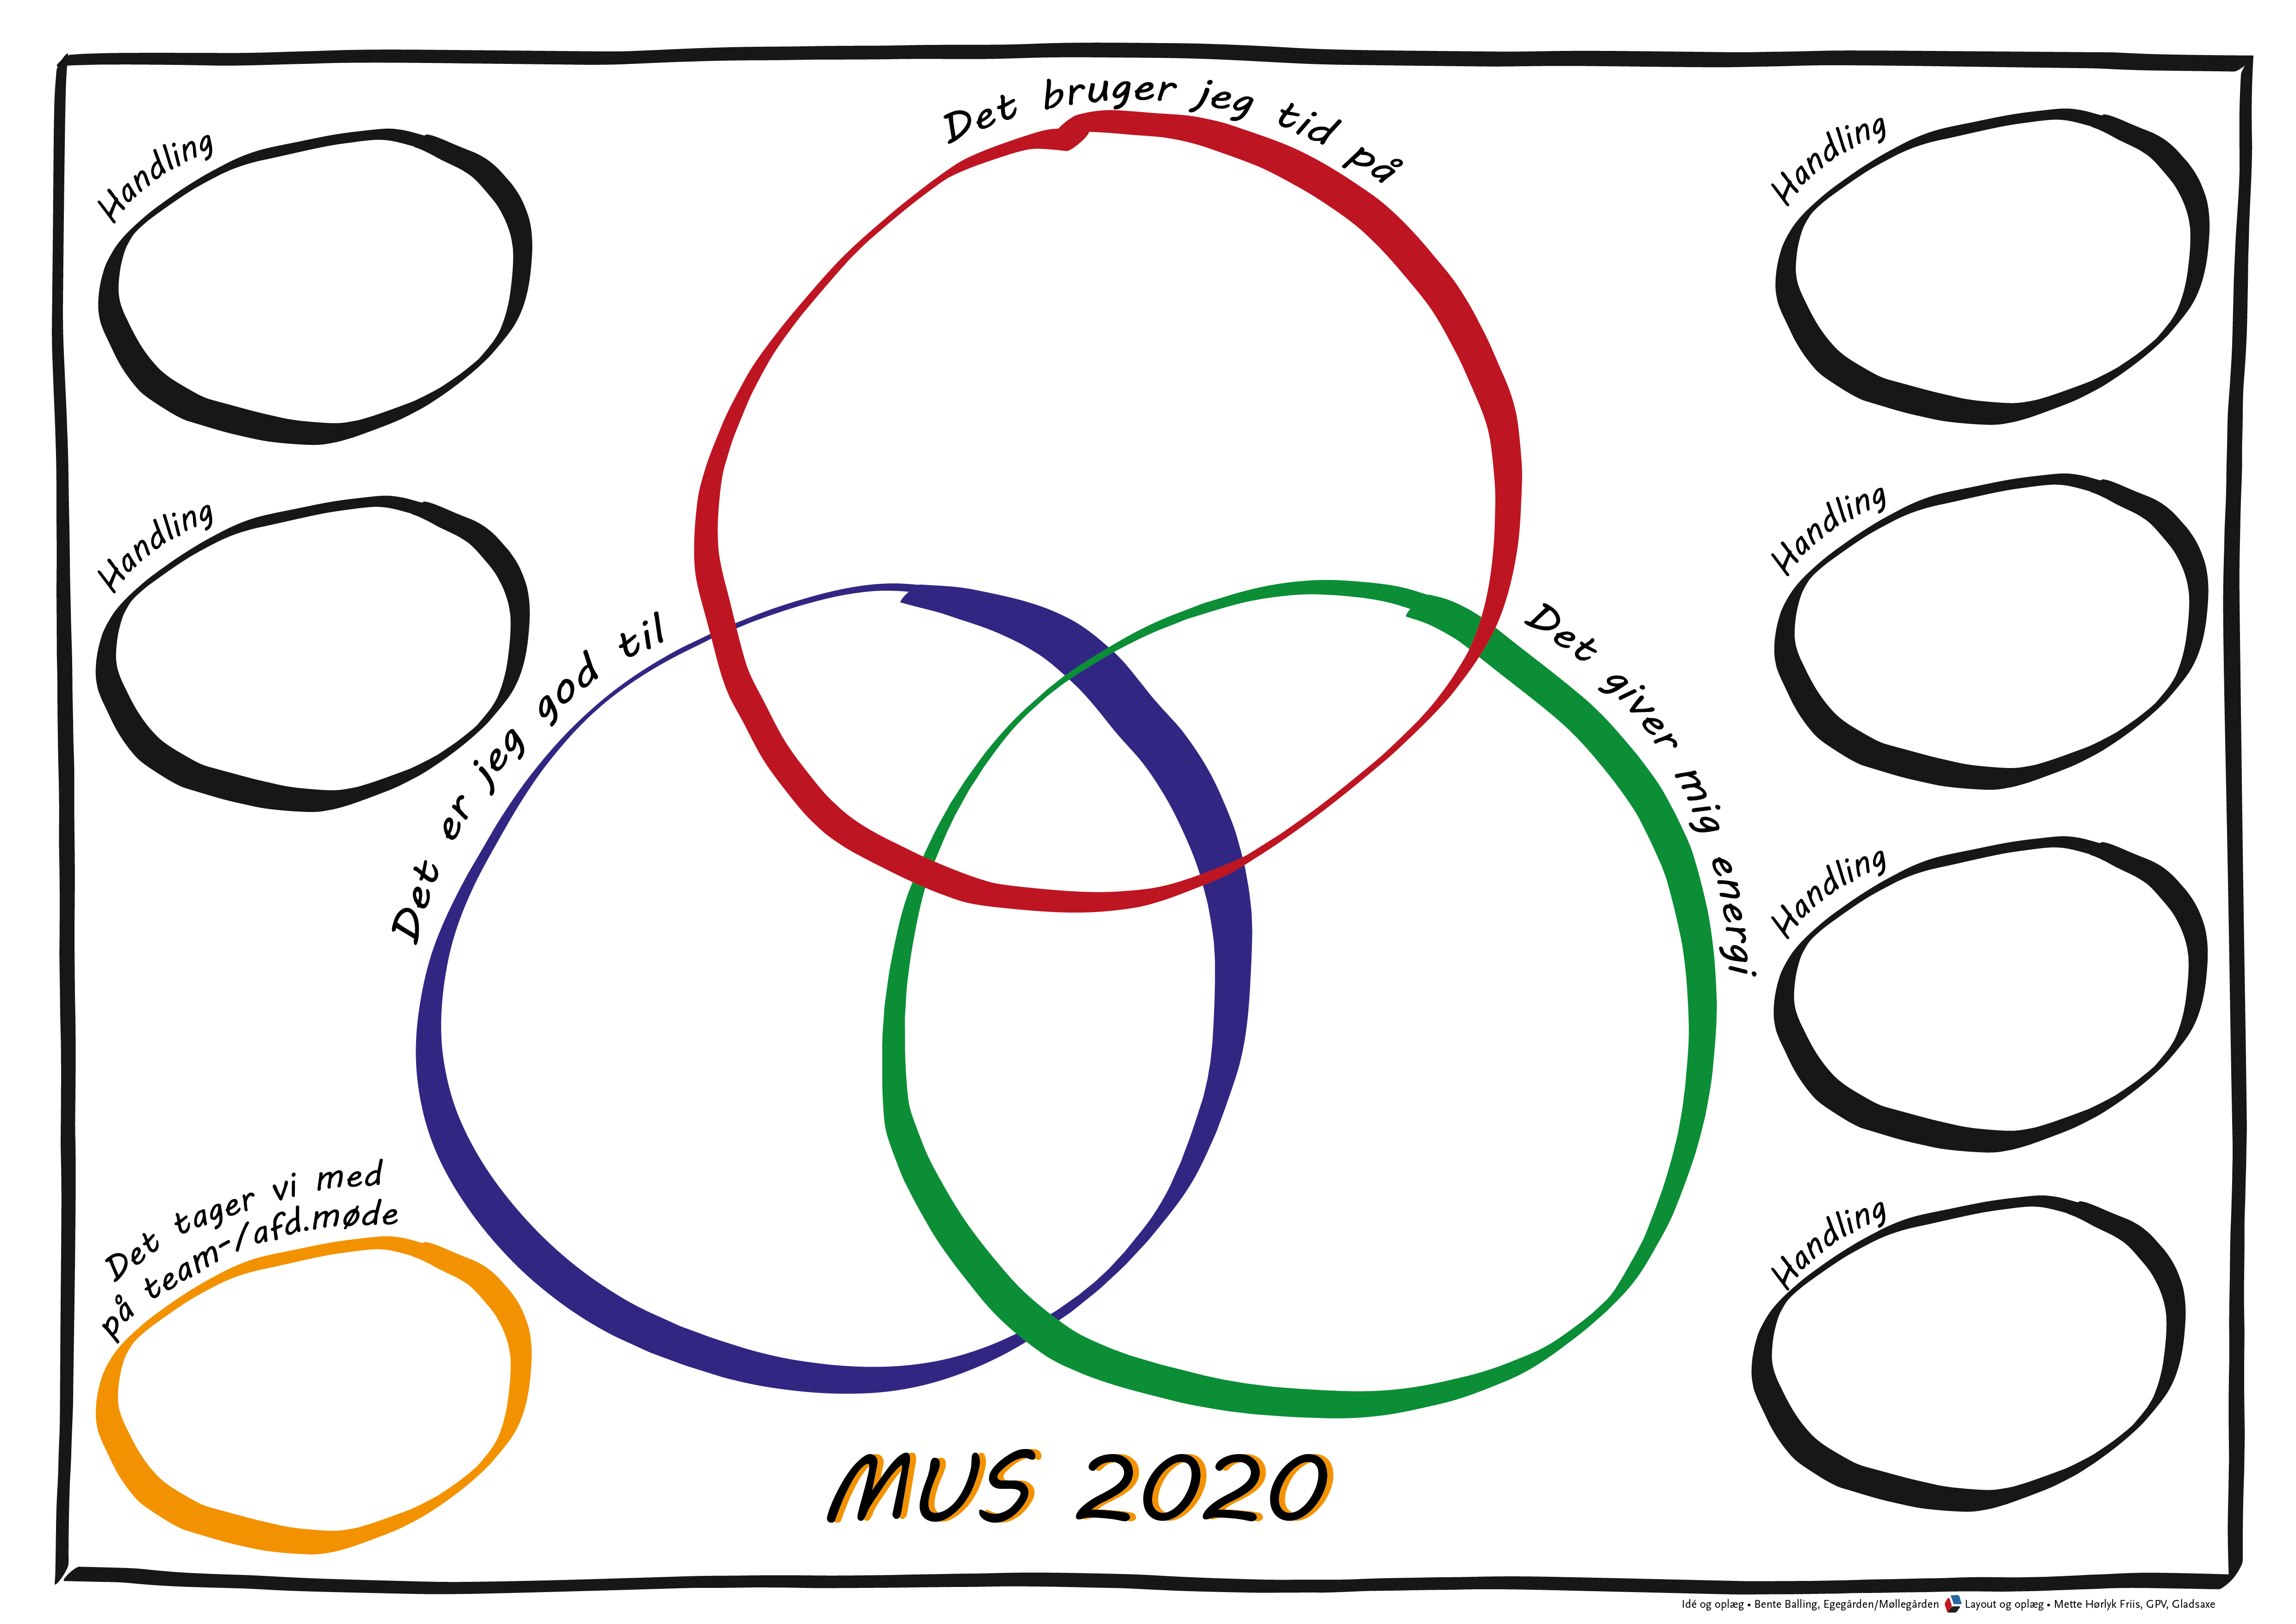 MUS-samtale skemaet er illustreret i tre cirkler, som medarbejderen udfylder inden, under og efter MUS-samtalen. 